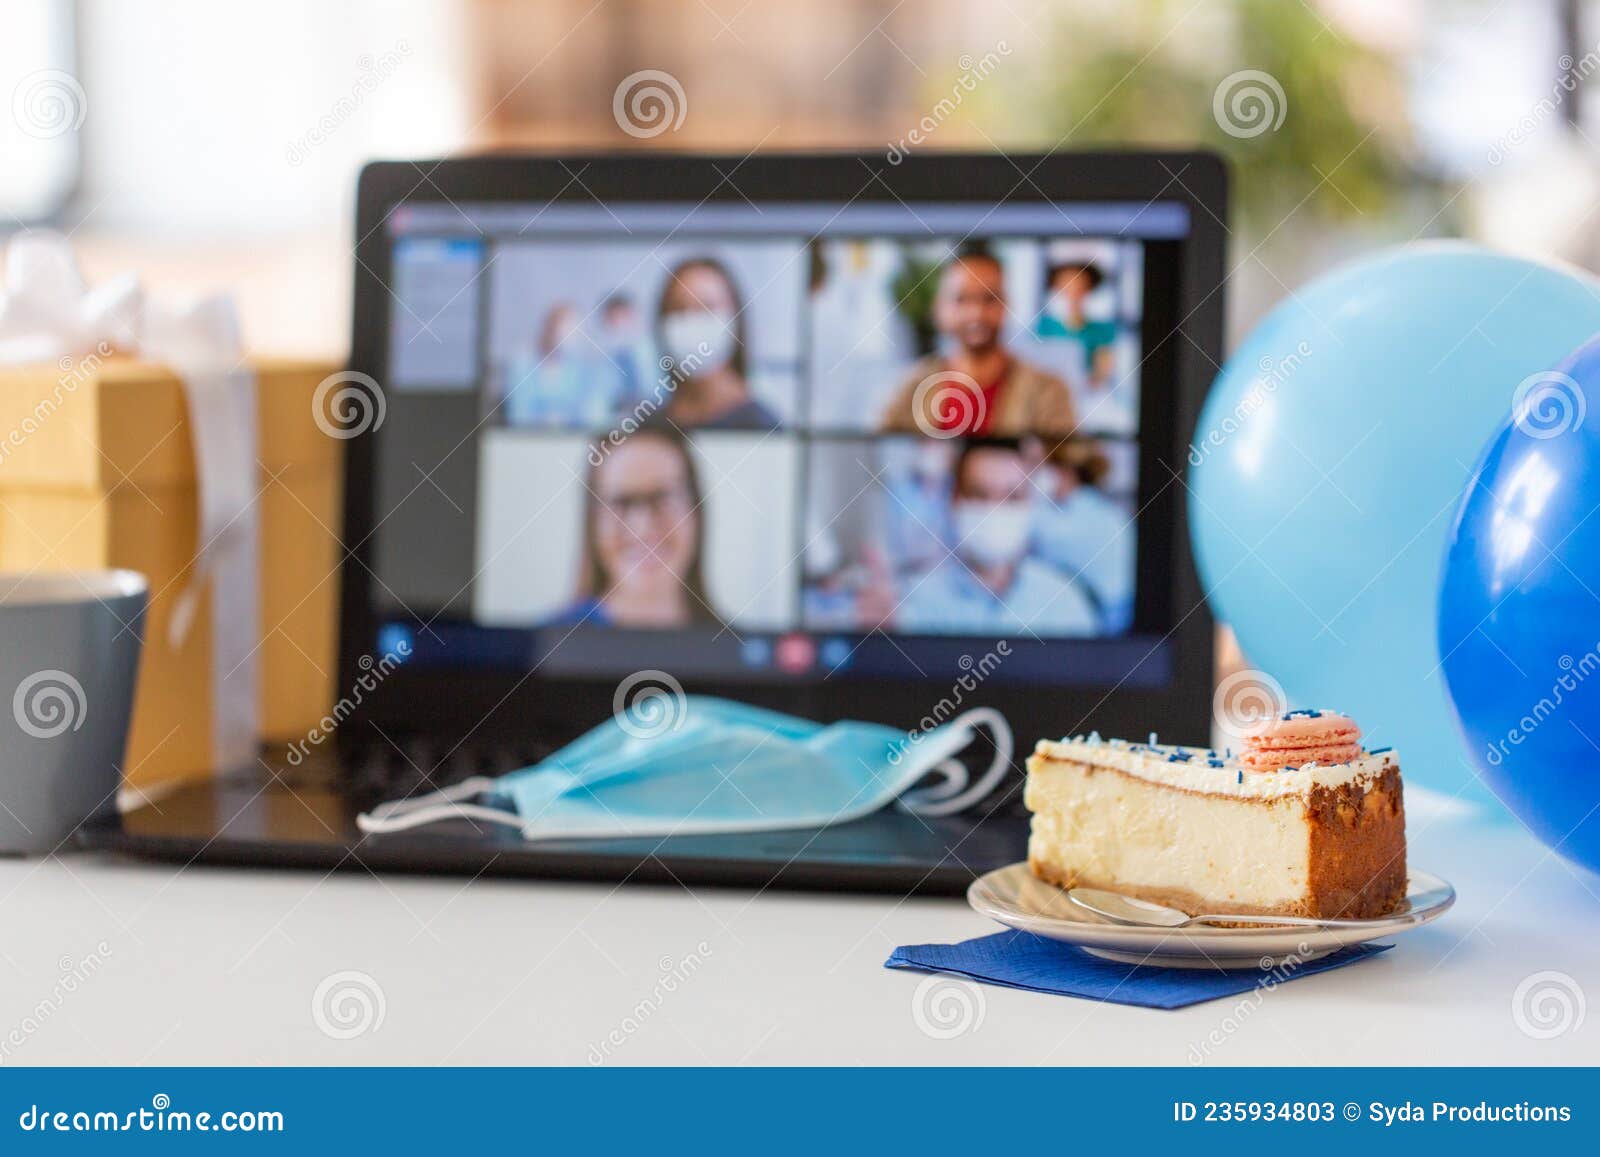 Pastel De Cumpleaños Y Laptop Con Videollamada En Pantalla Imagen de  archivo - Imagen de globo, torta: 235934803